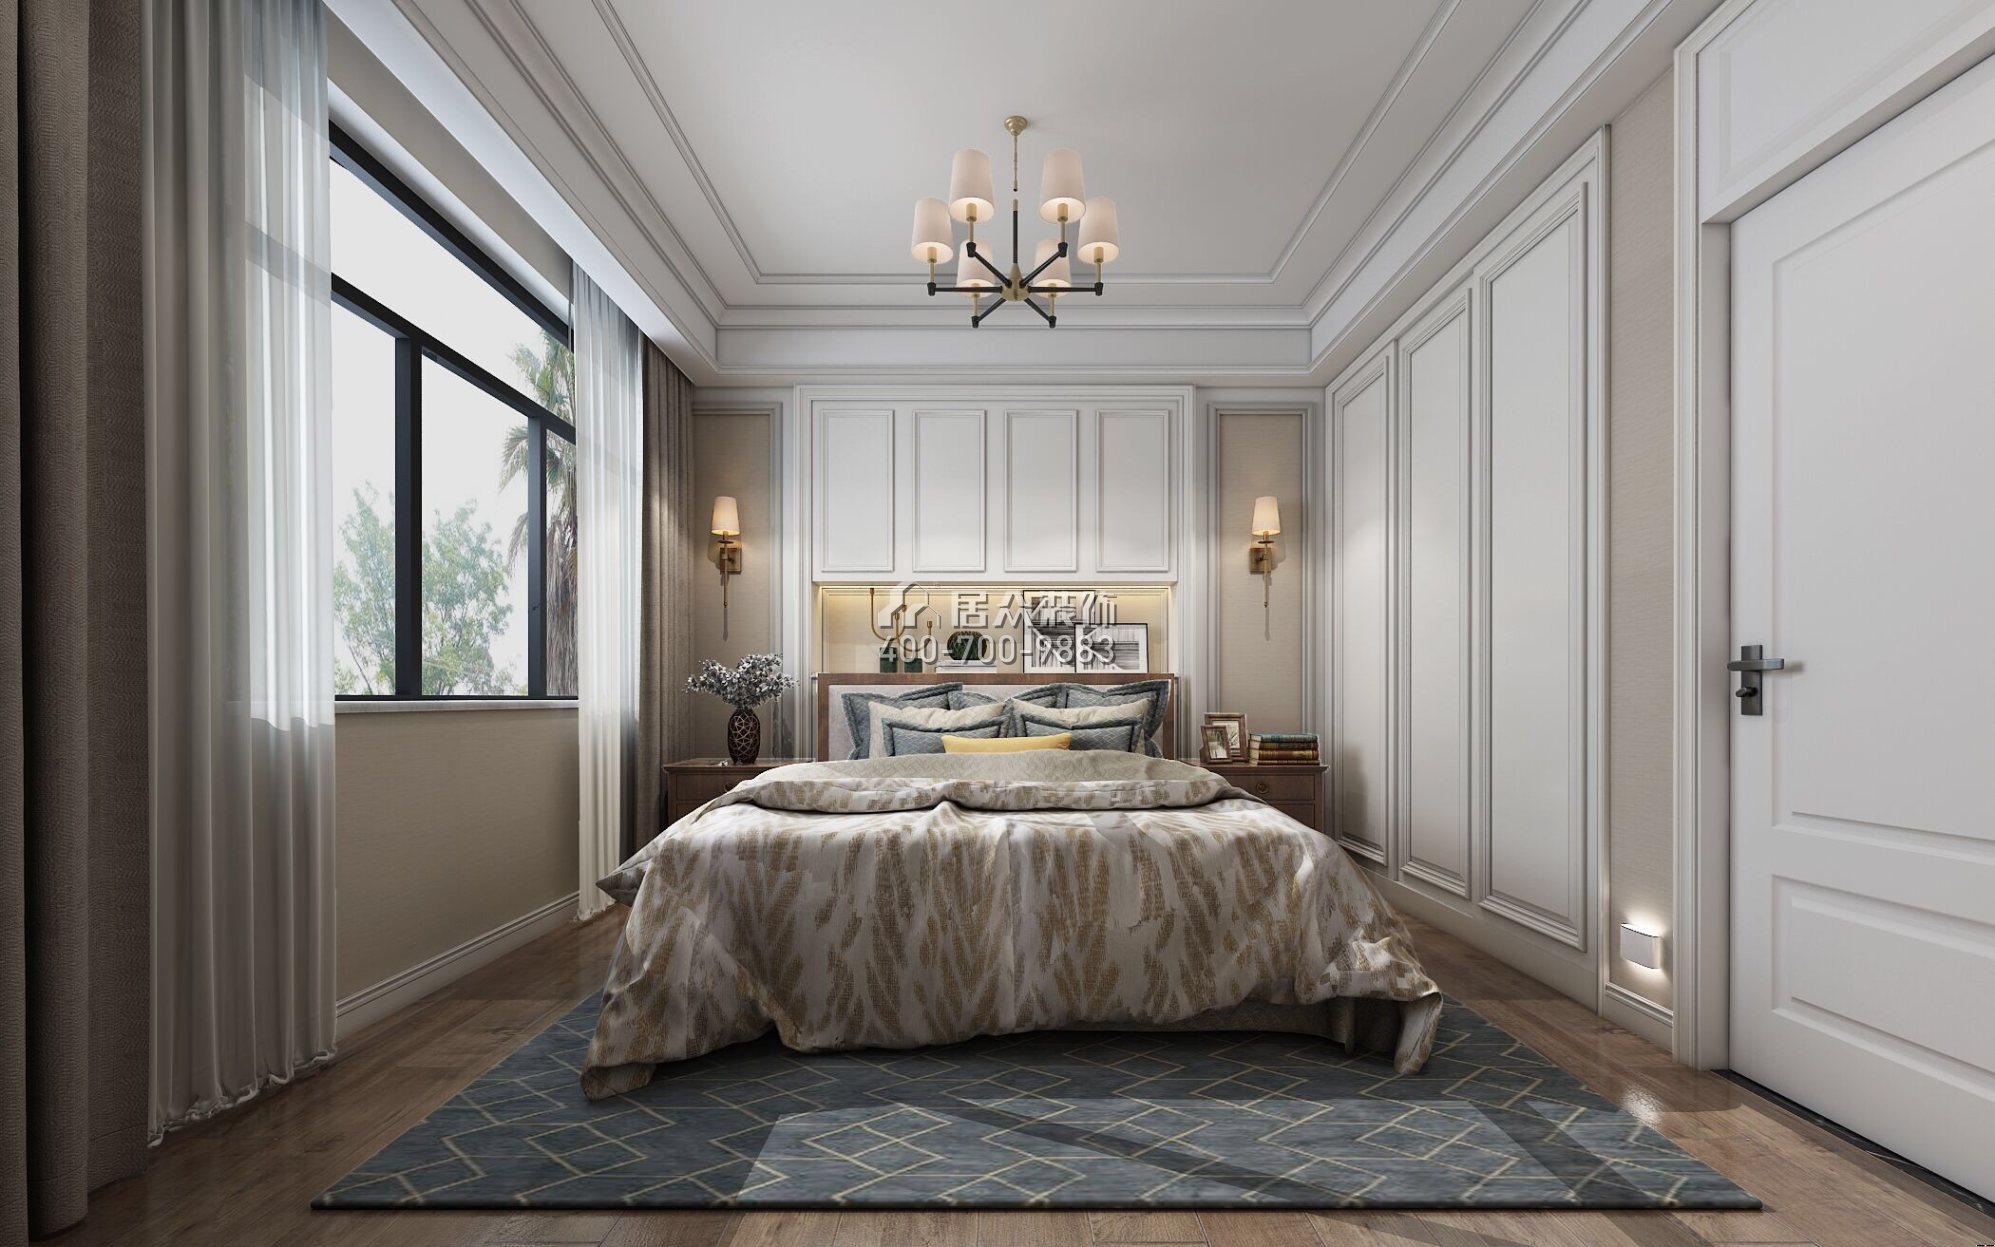 保利中央公园450平方米美式风格别墅户型卧室装修效果图